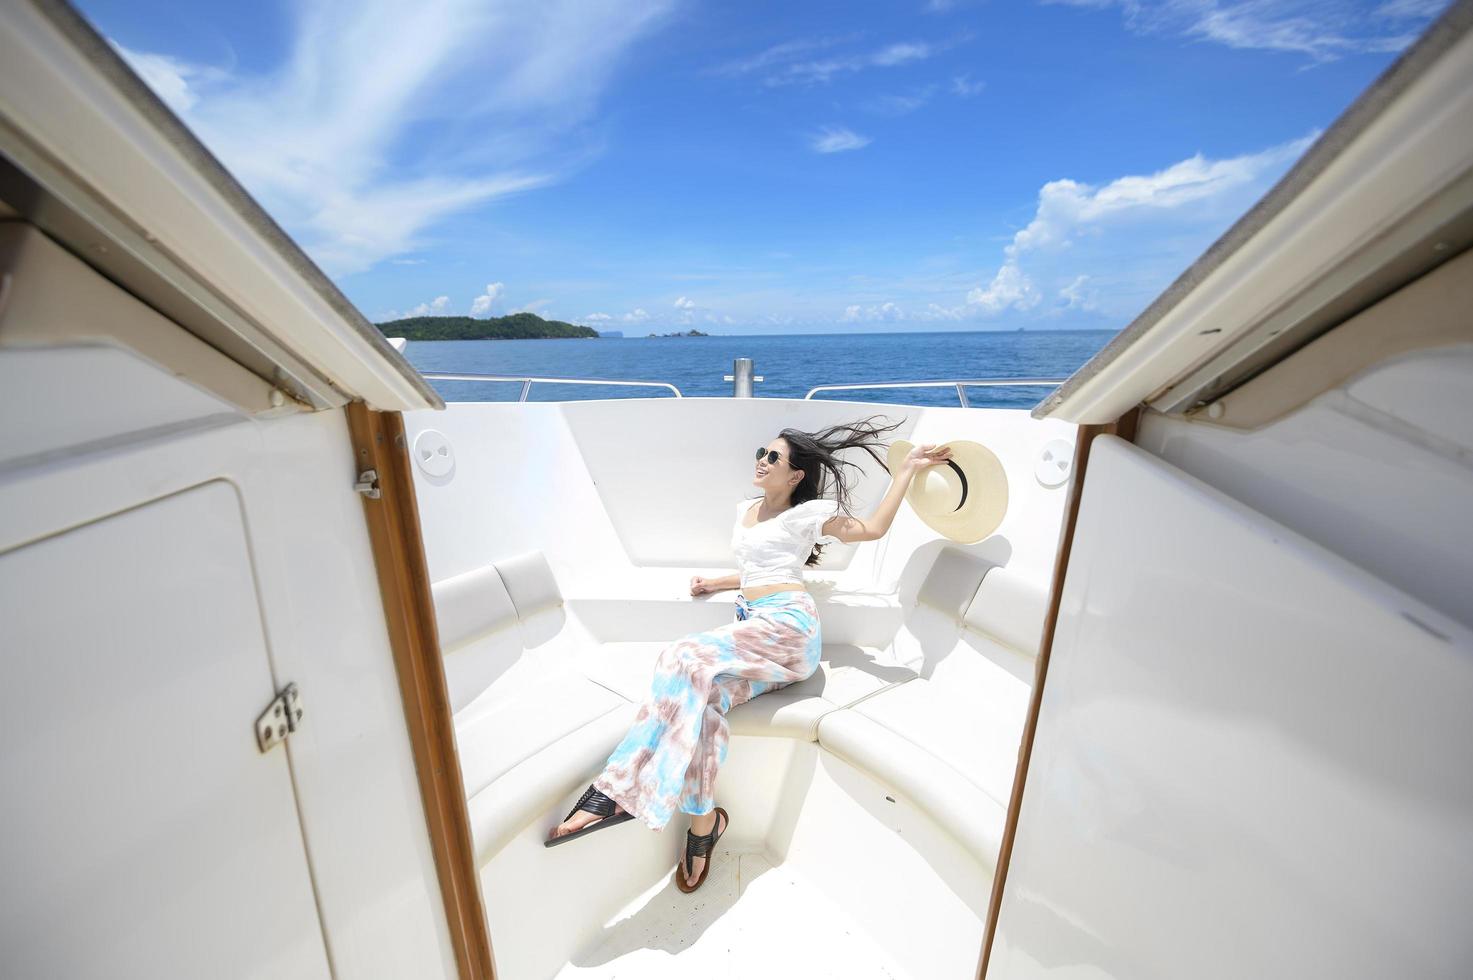 upphetsad turist njuter och kopplar av på motorbåt med en vacker utsikt över havet och bergen i bakgrunden foto